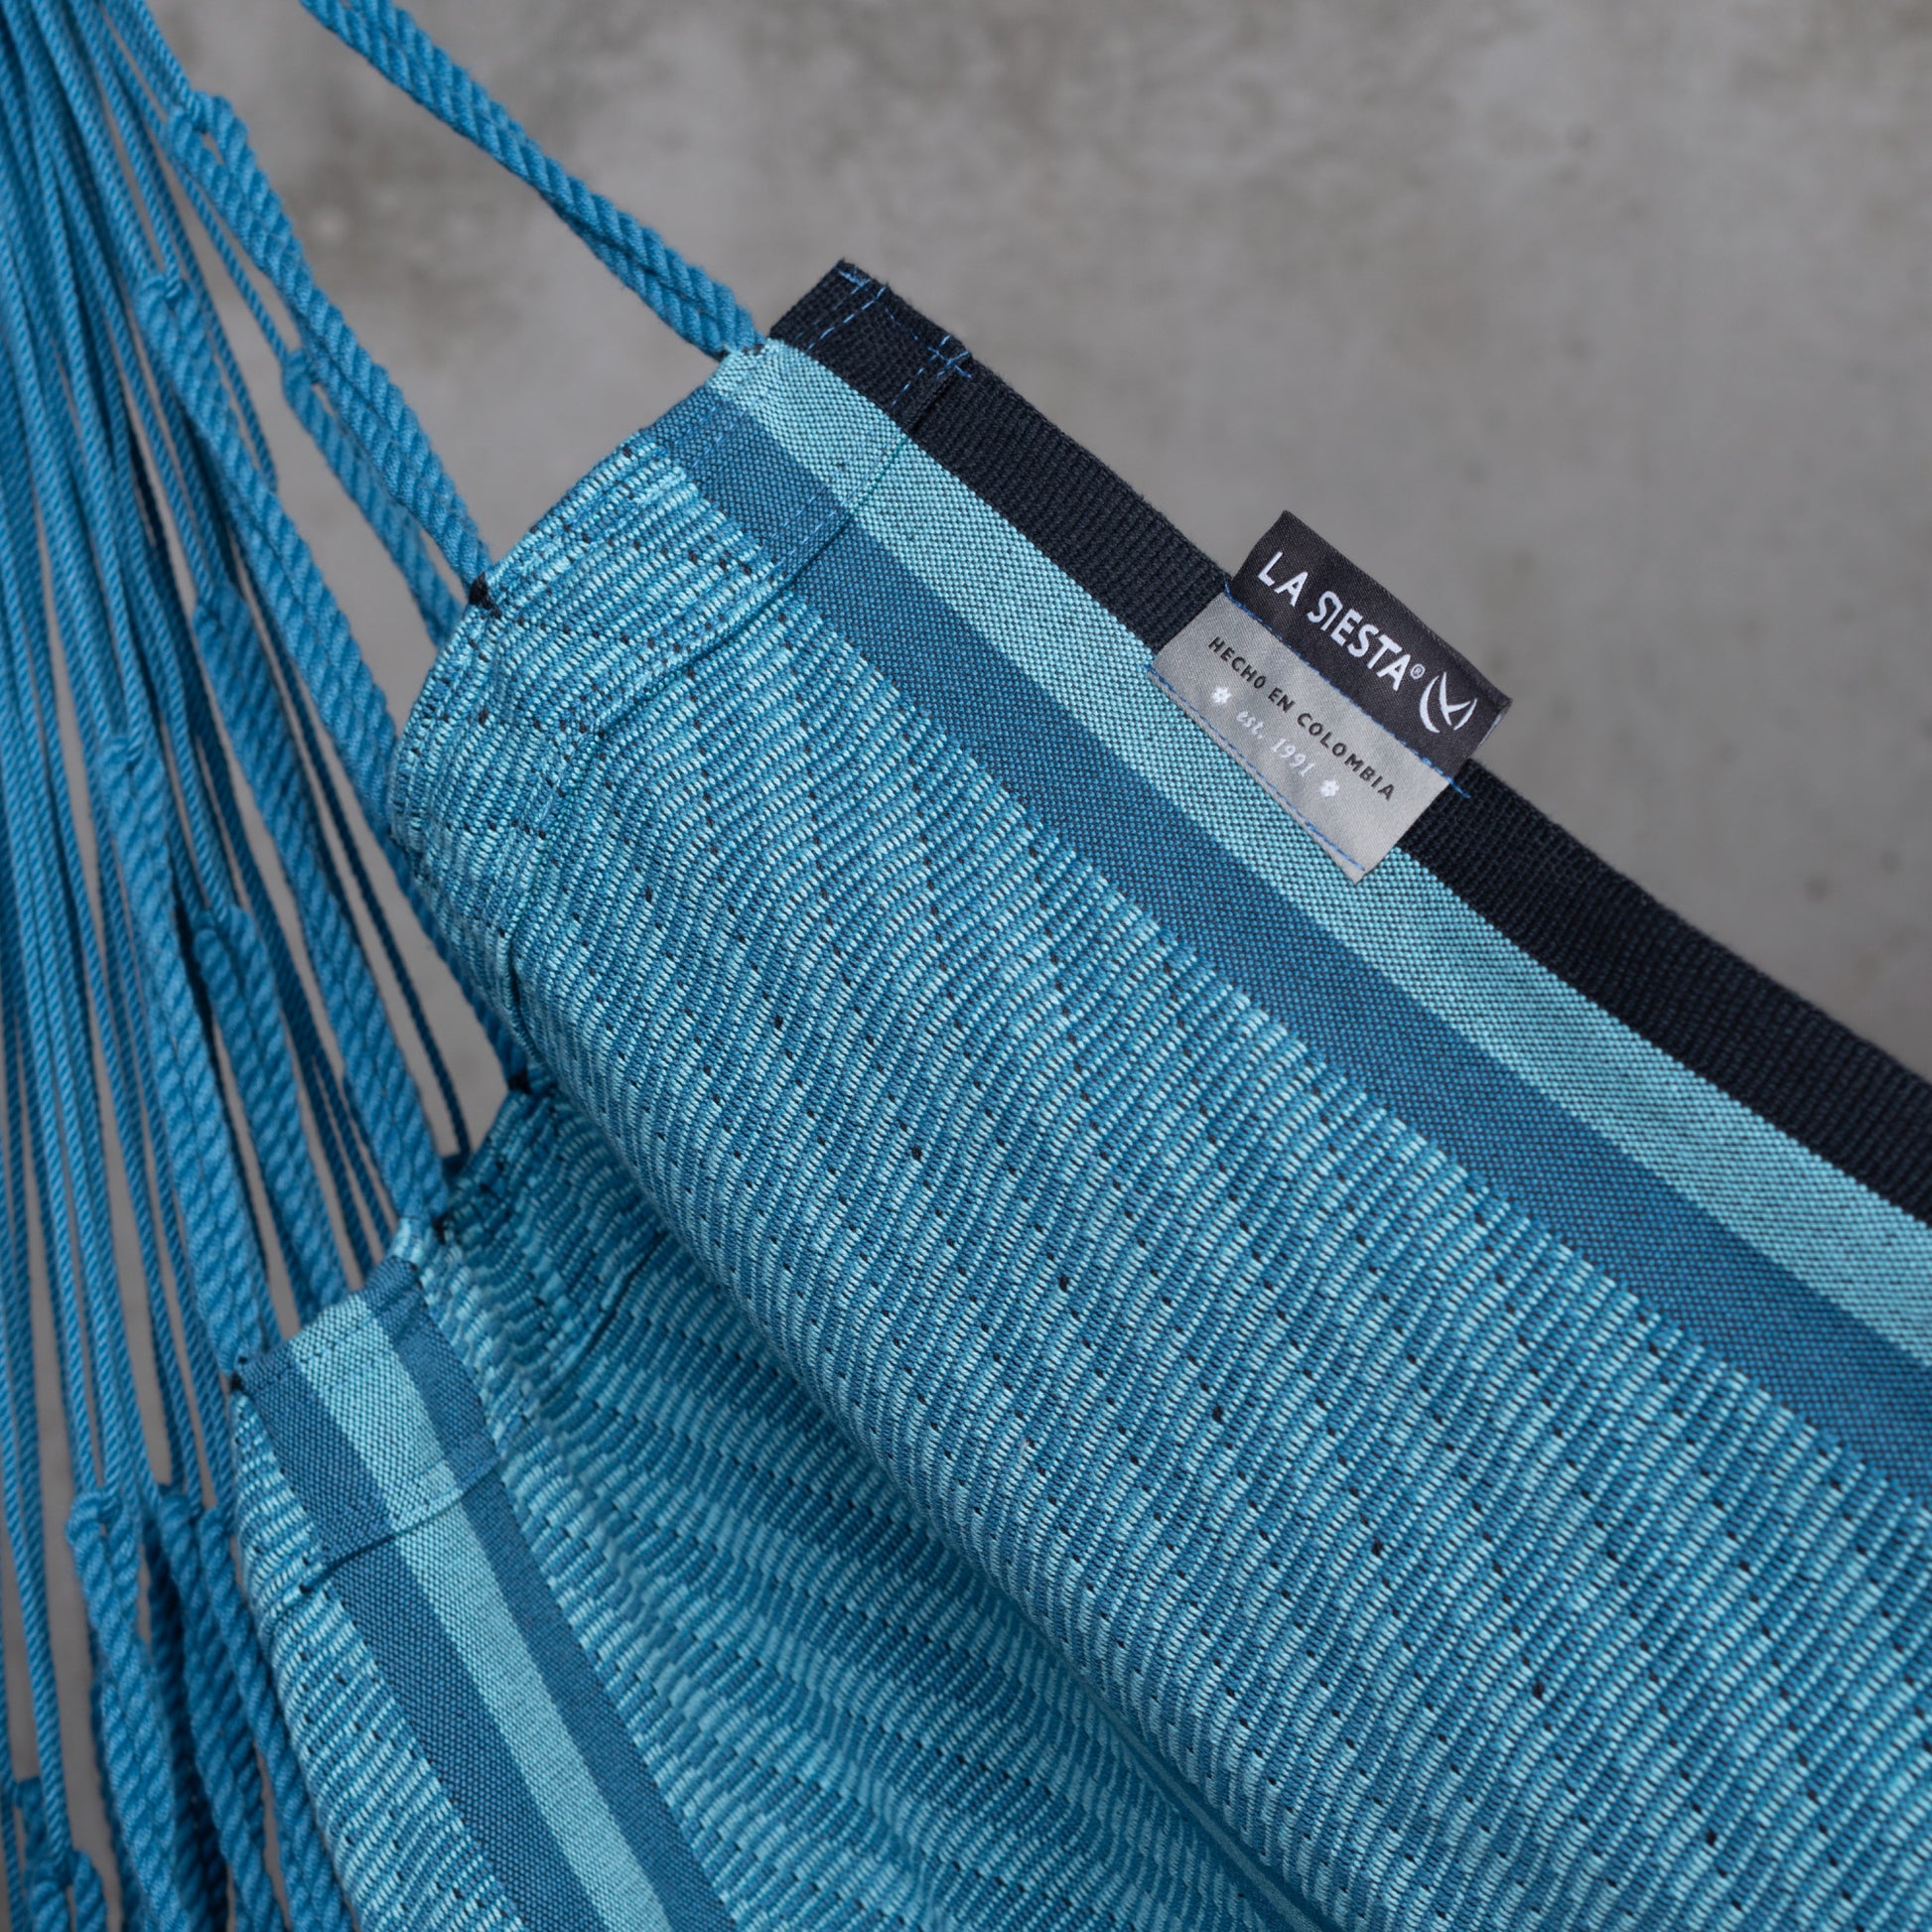 Habana Blue Zebra - Fotel hamakowy Comfort wykonany z bawełny organicznej